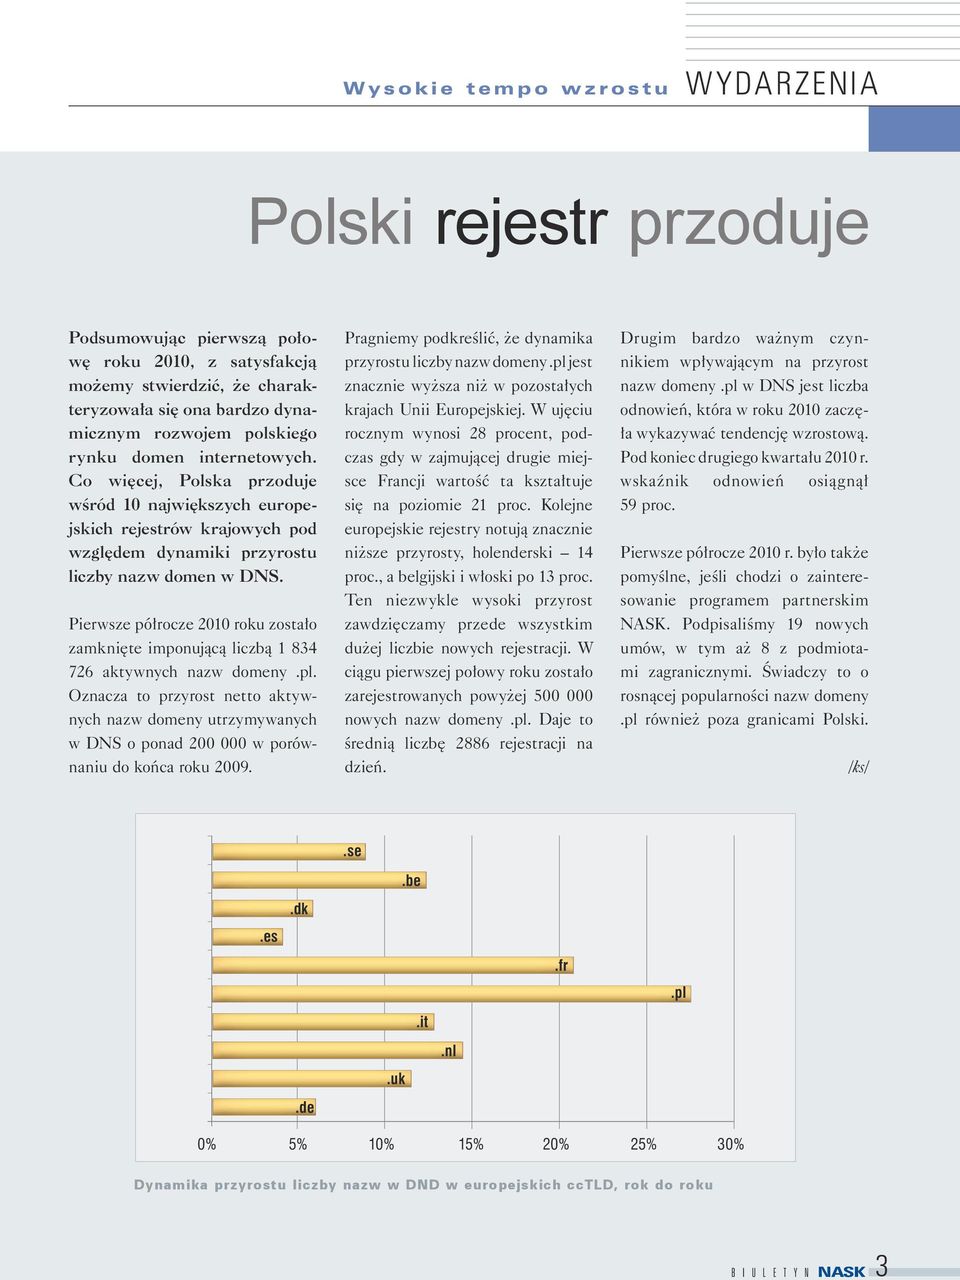 Pierwsze półrocze 2010 roku zostało zamknięte imponującą liczbą 1 834 726 aktywnych nazw domeny.pl.